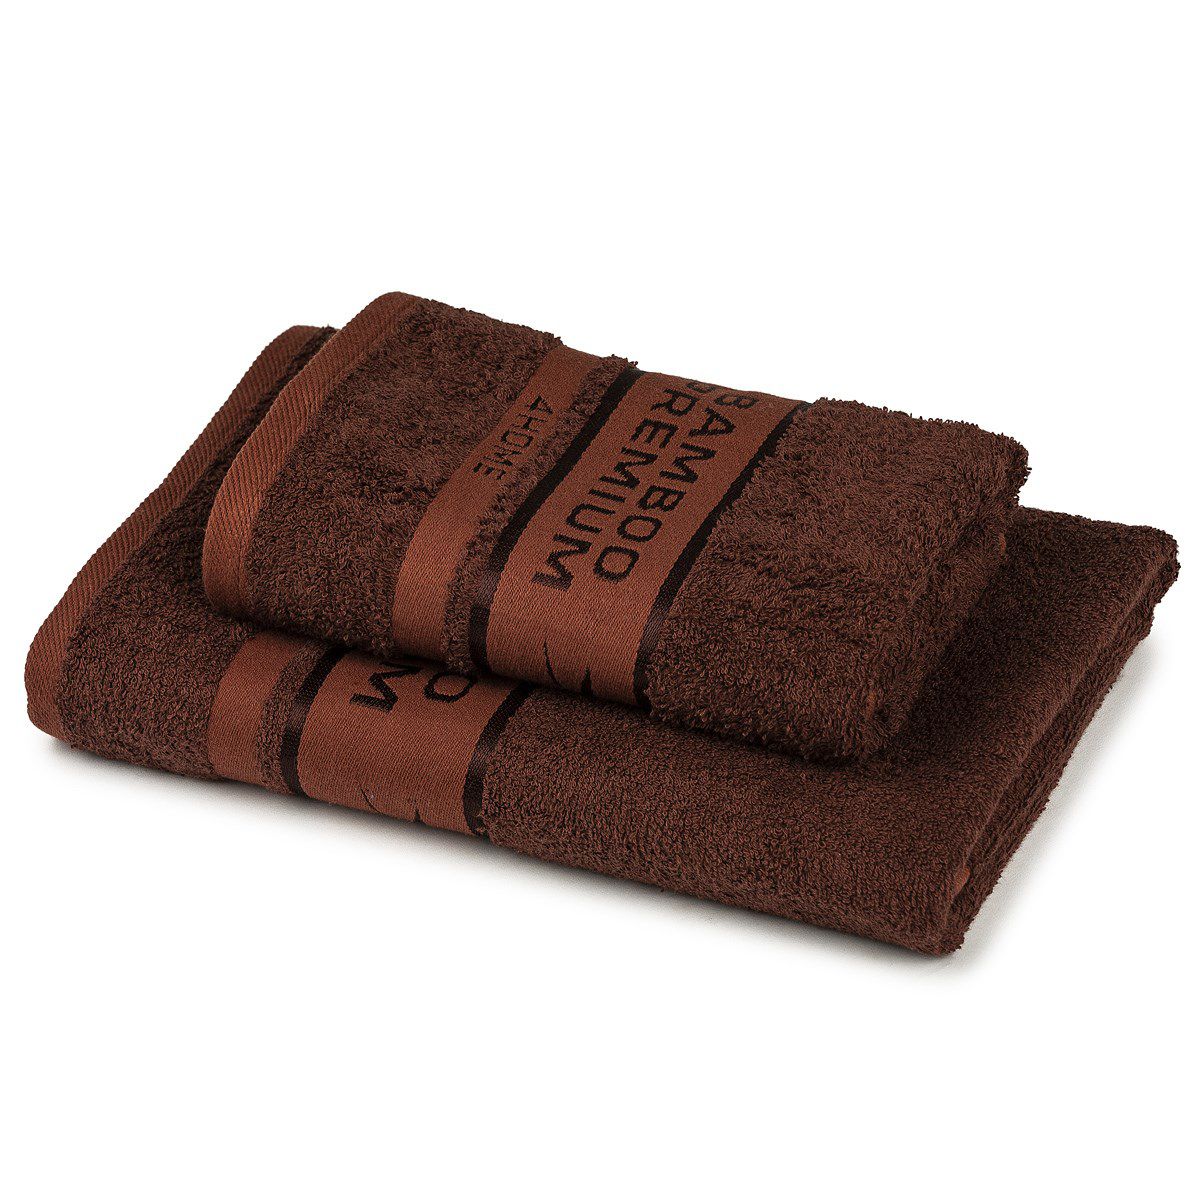 4Home Sada Bamboo Premium osuška a ručník tmavě hnědá, 70 x 140 cm, 50 x 100 cm - 4home.cz